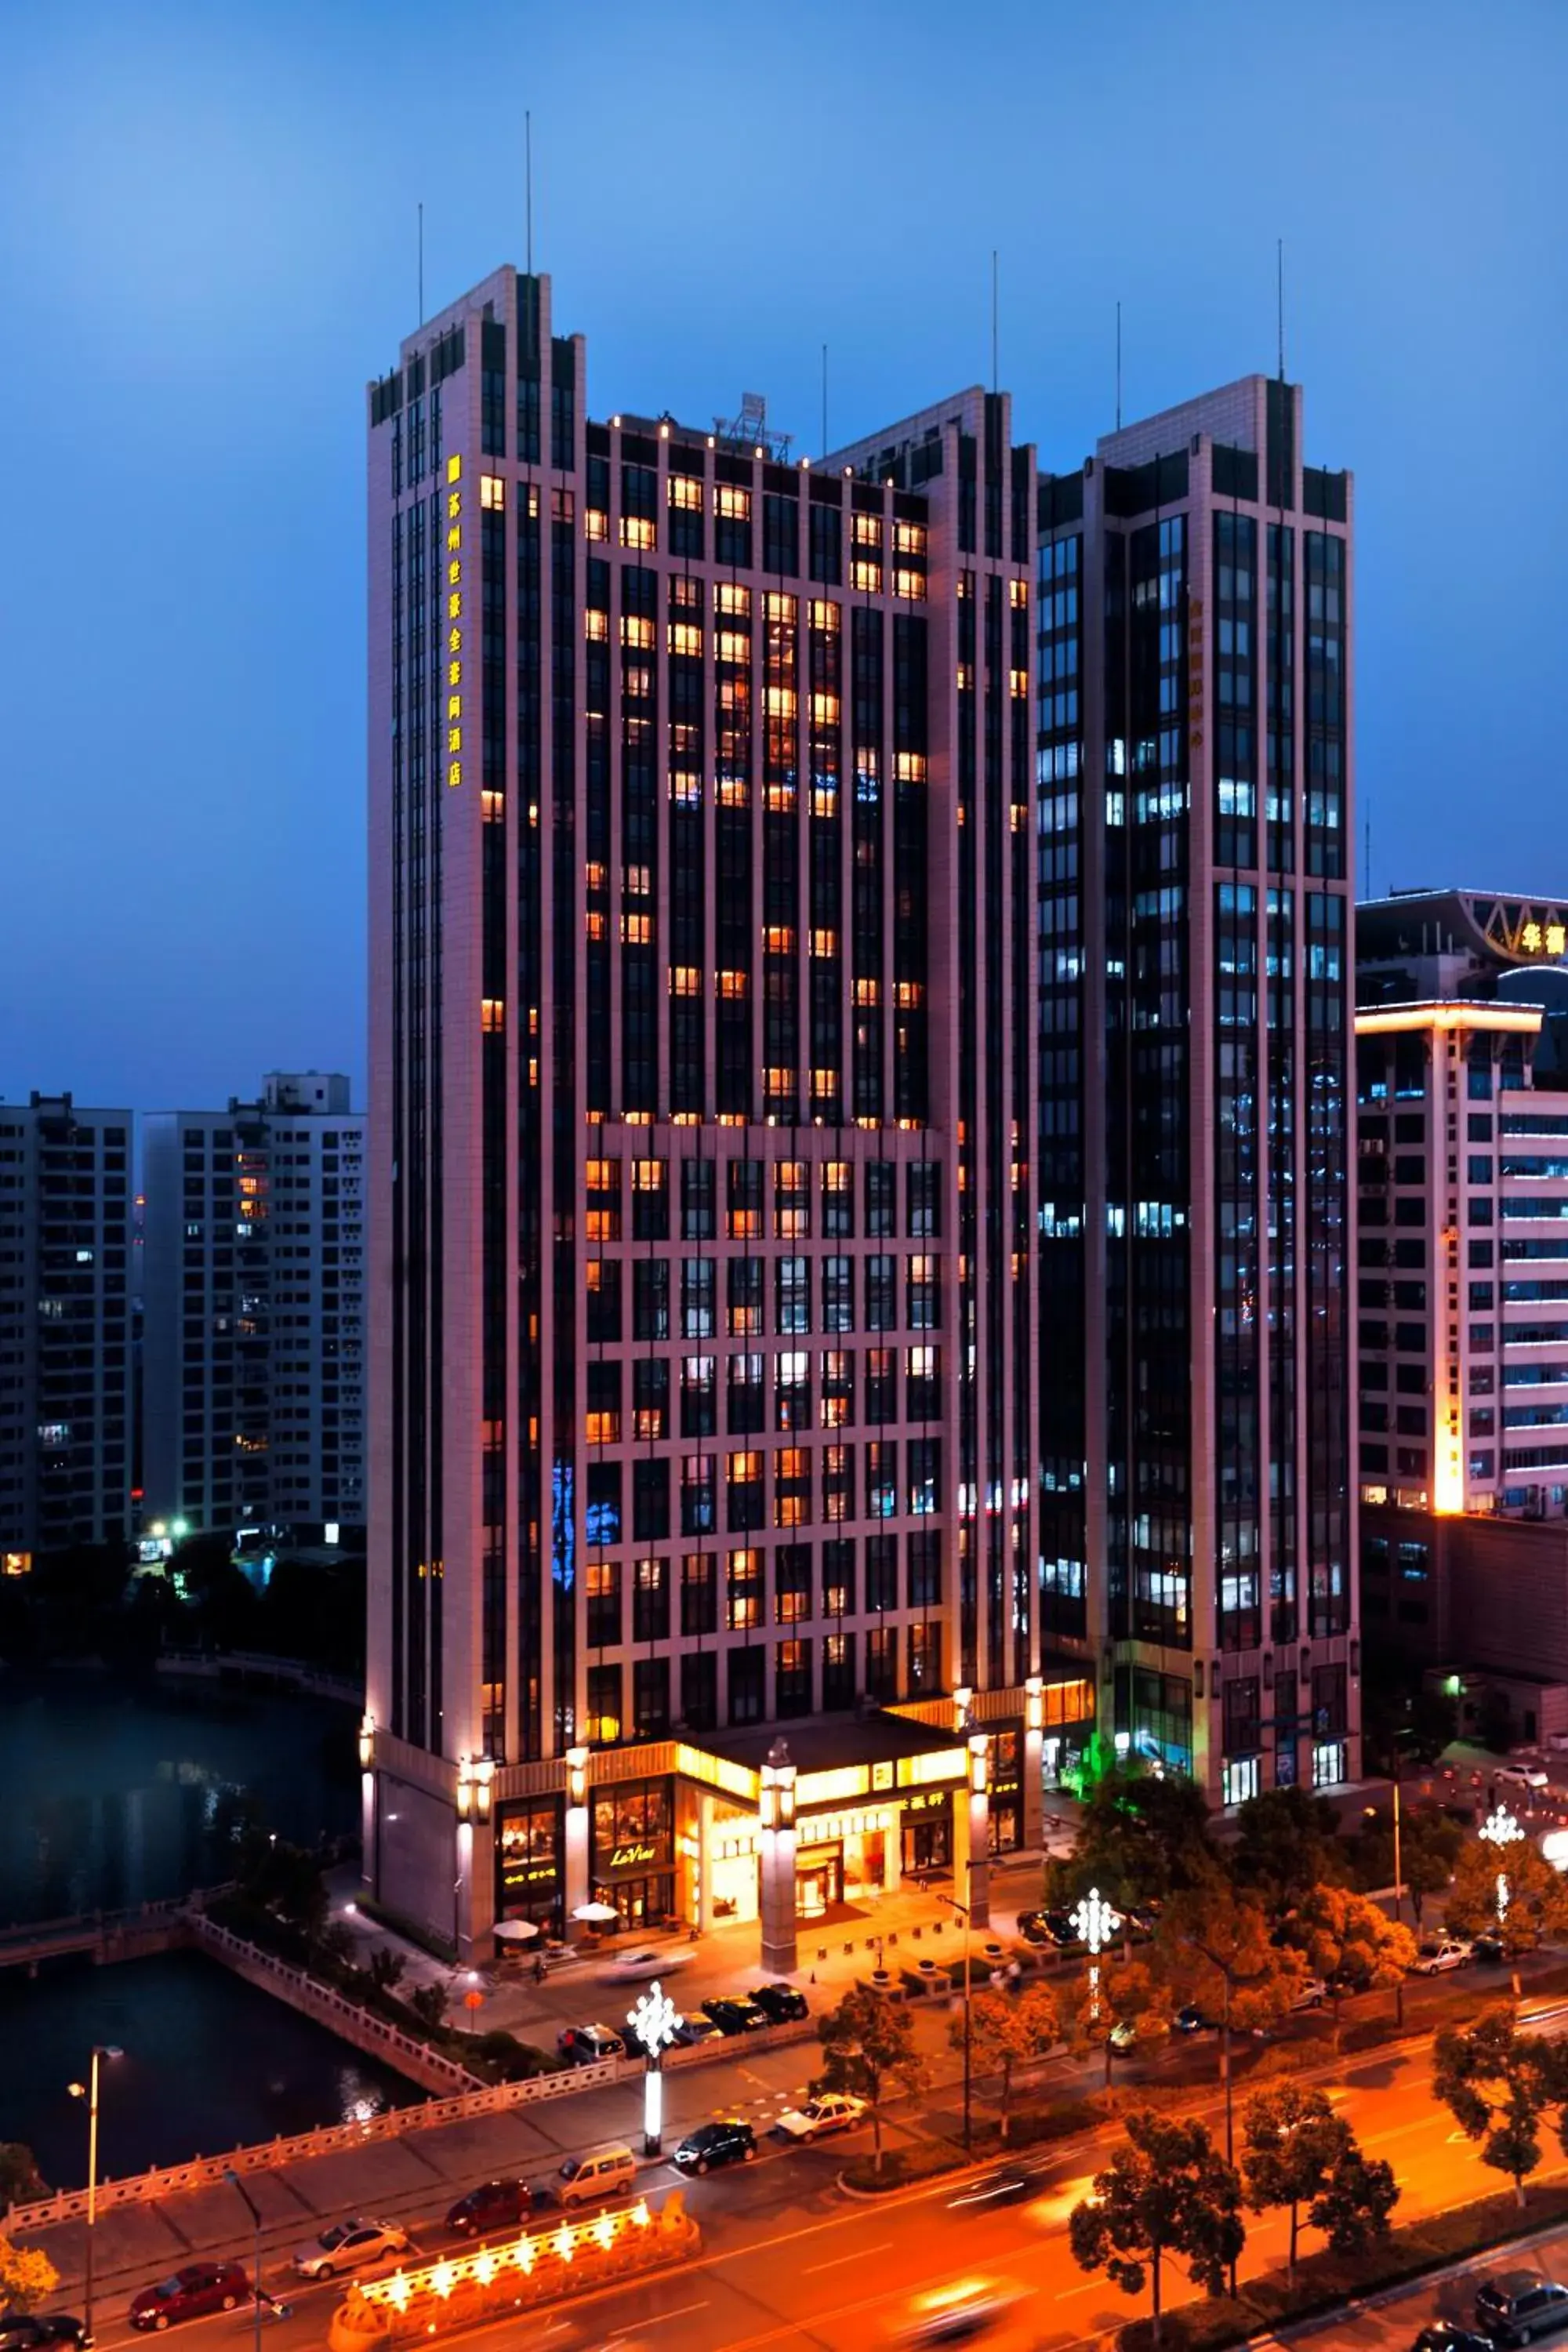 Facade/entrance in Wealthy Hotel Suzhou